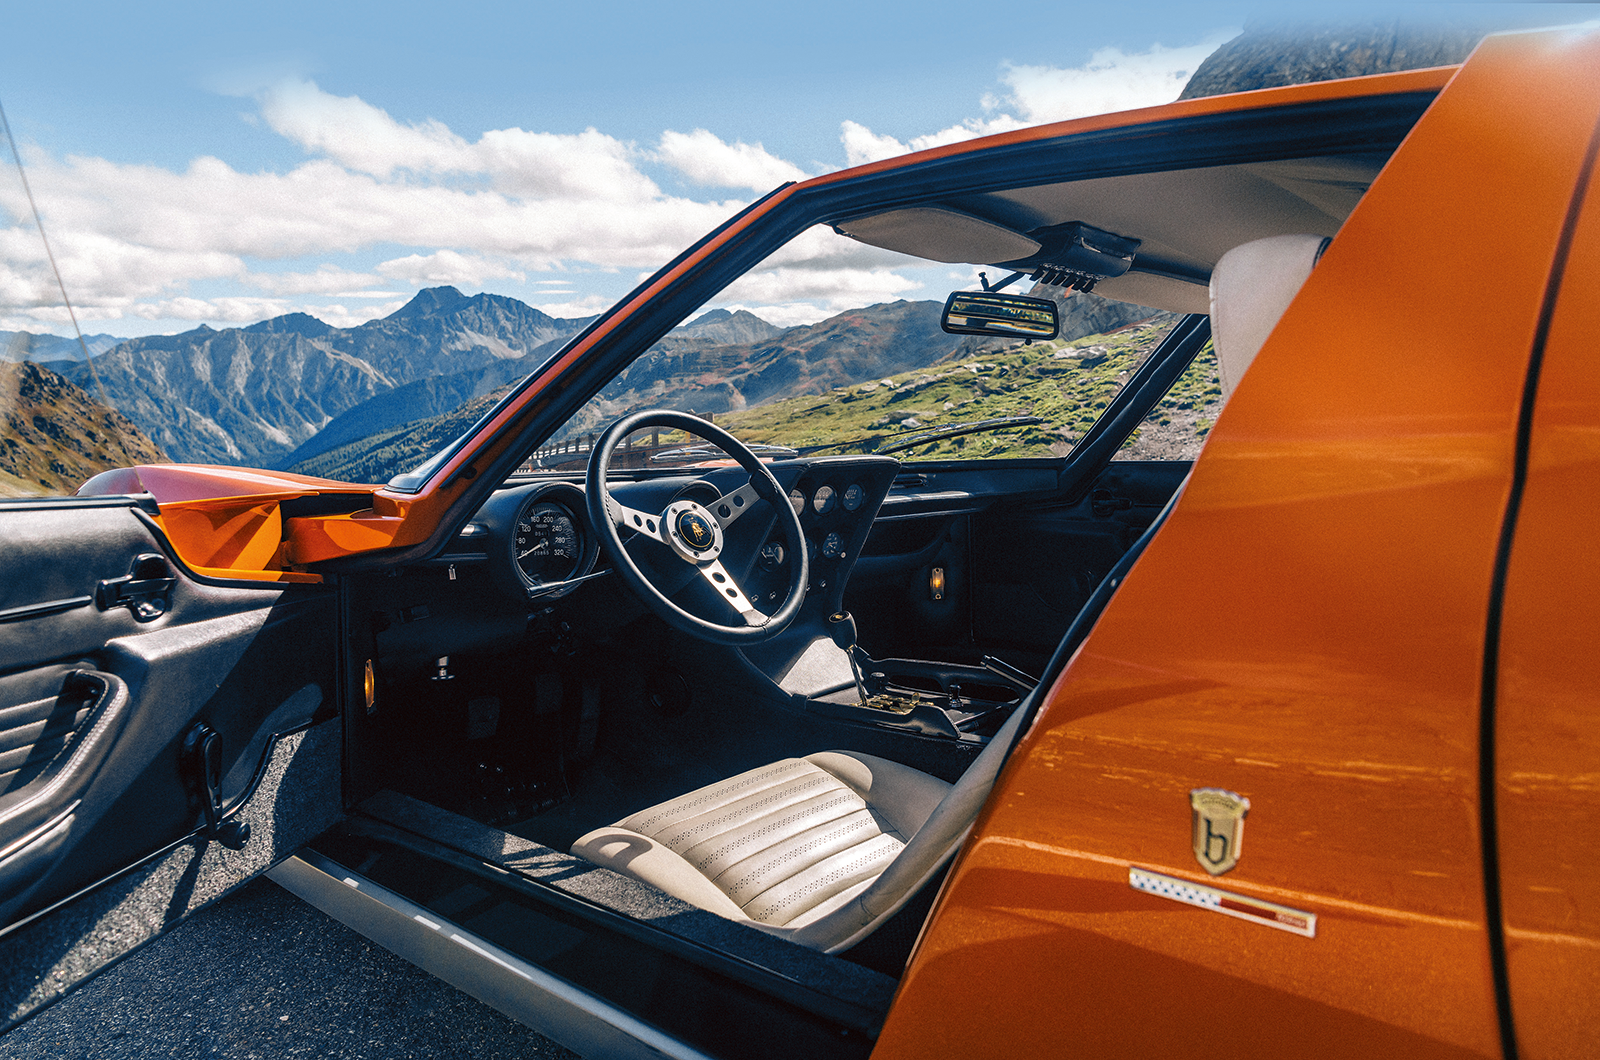 Classic & Sports Car – The true story of The Italian Job Lamborghini Miura